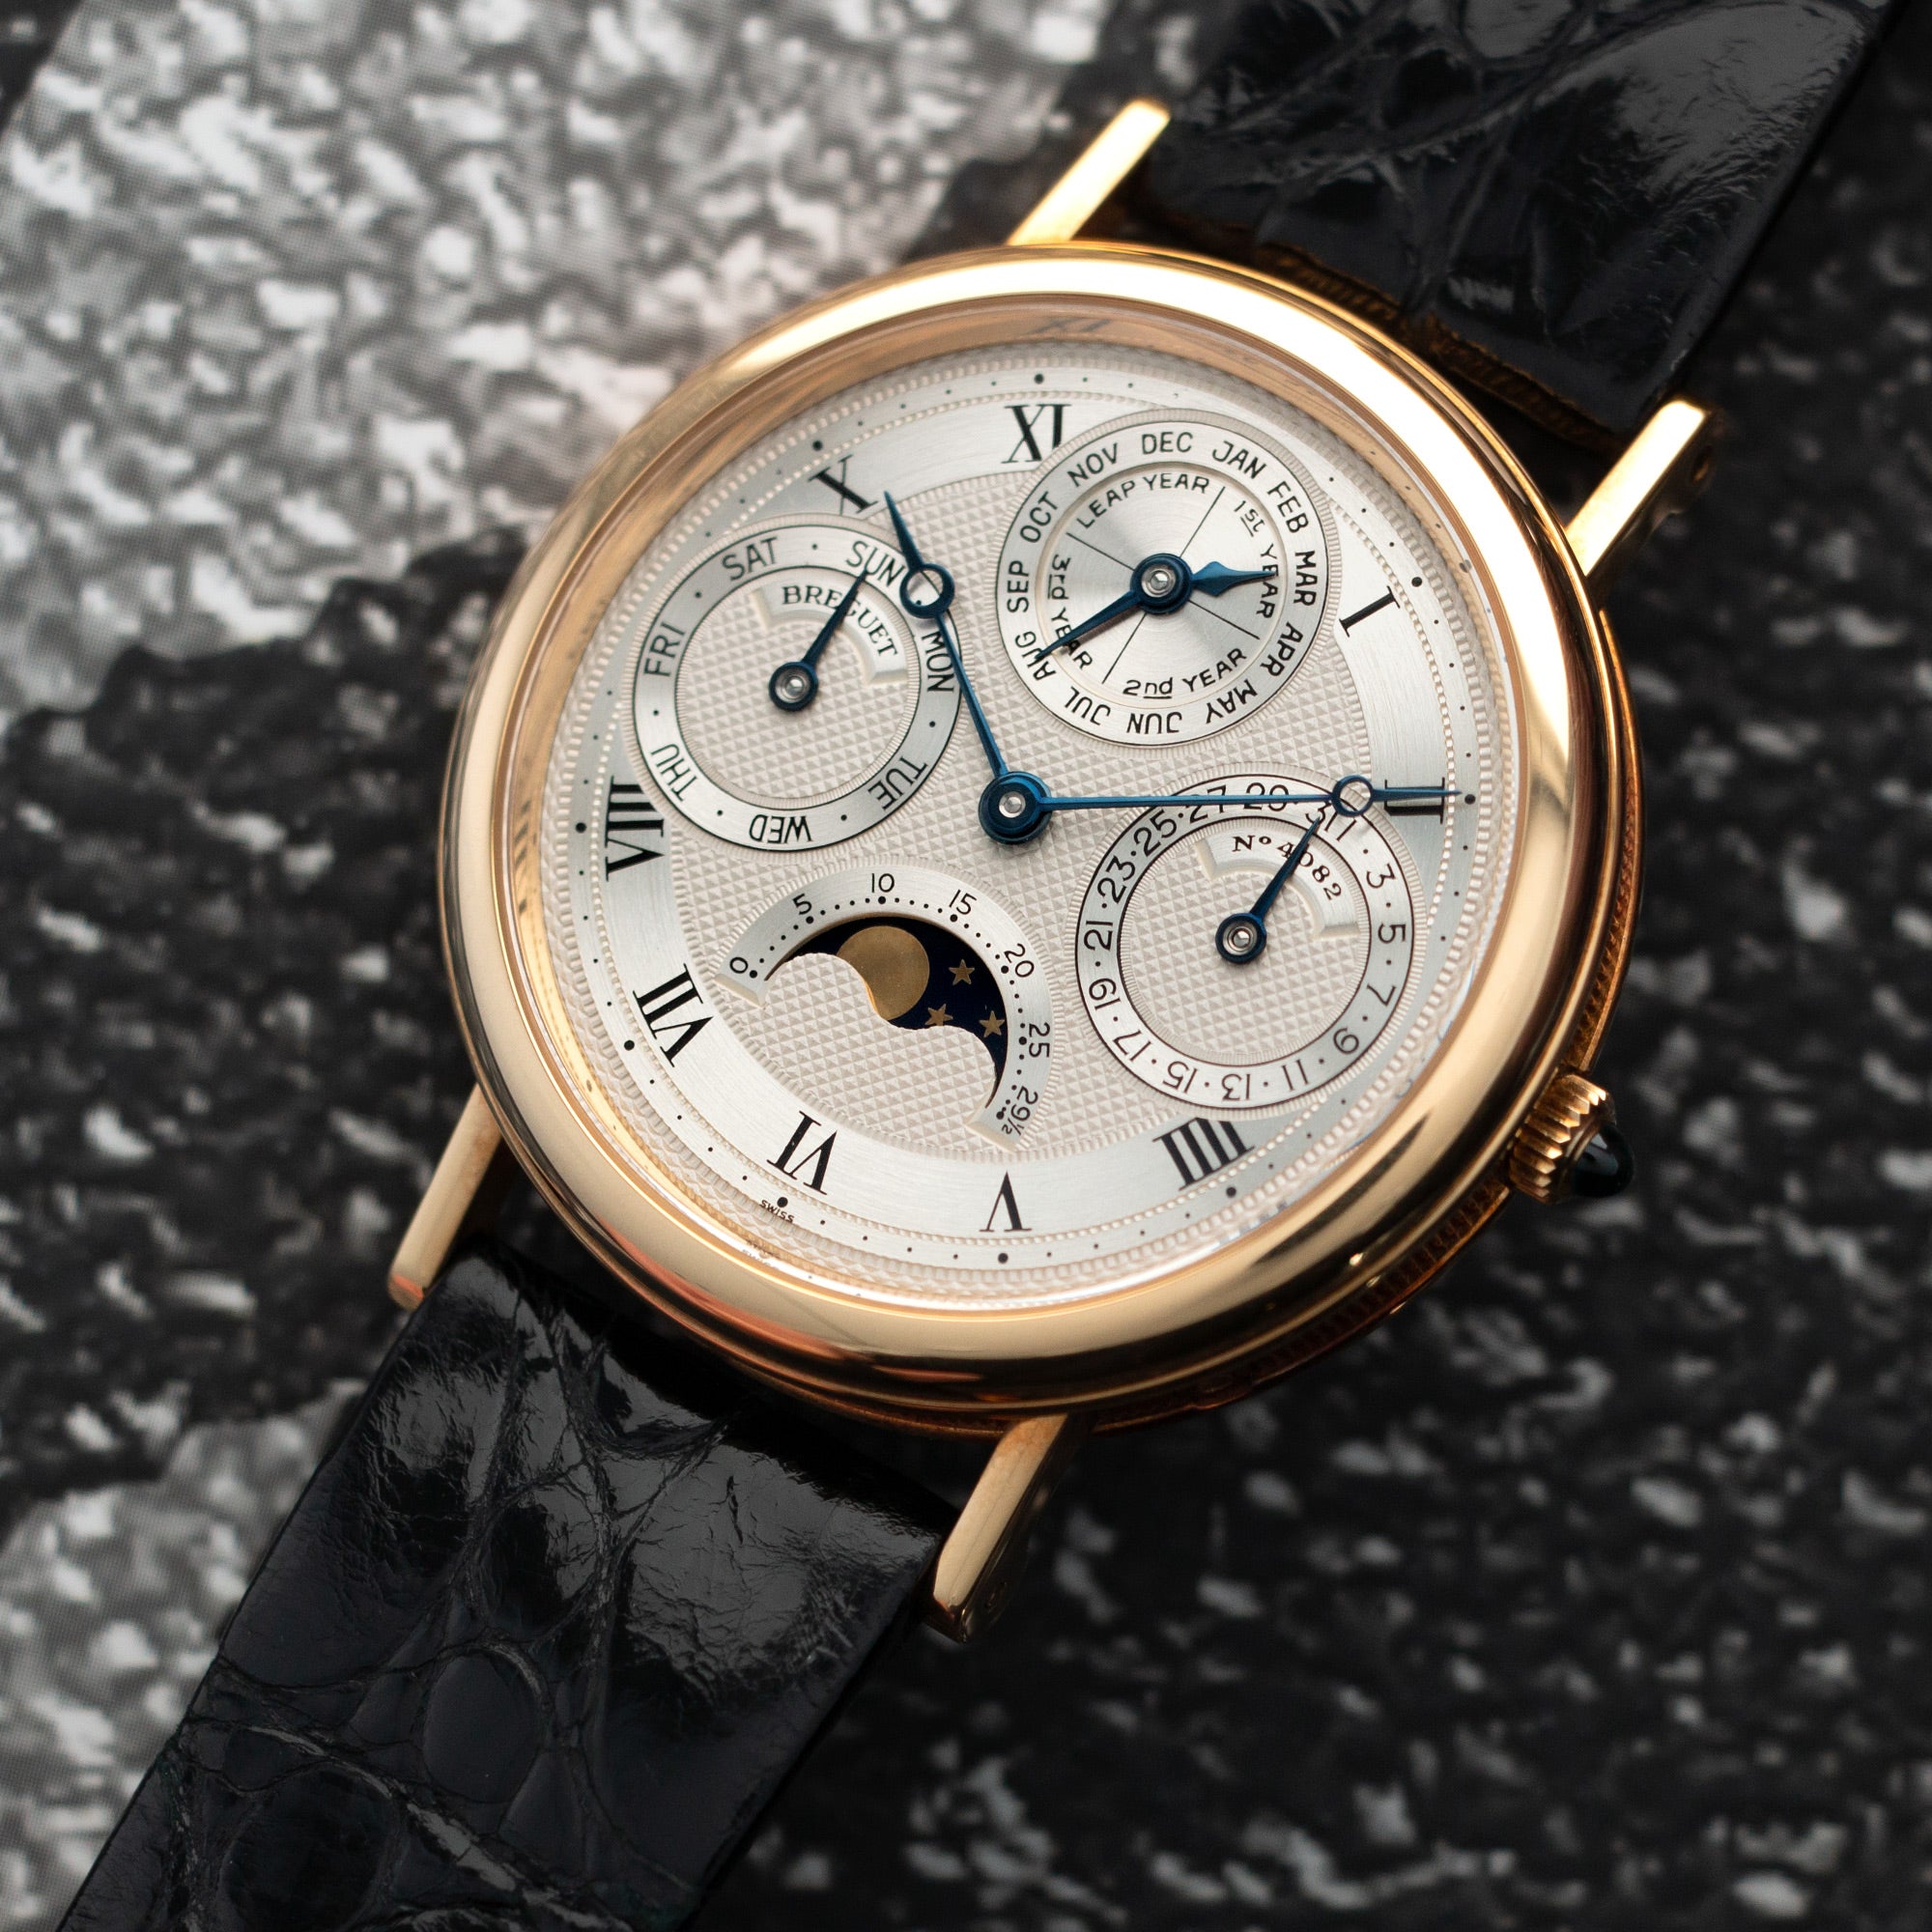 Breguet - Breguet Automatic Perpetual Calendar Watch Ref. 3050 - The Keystone Watches